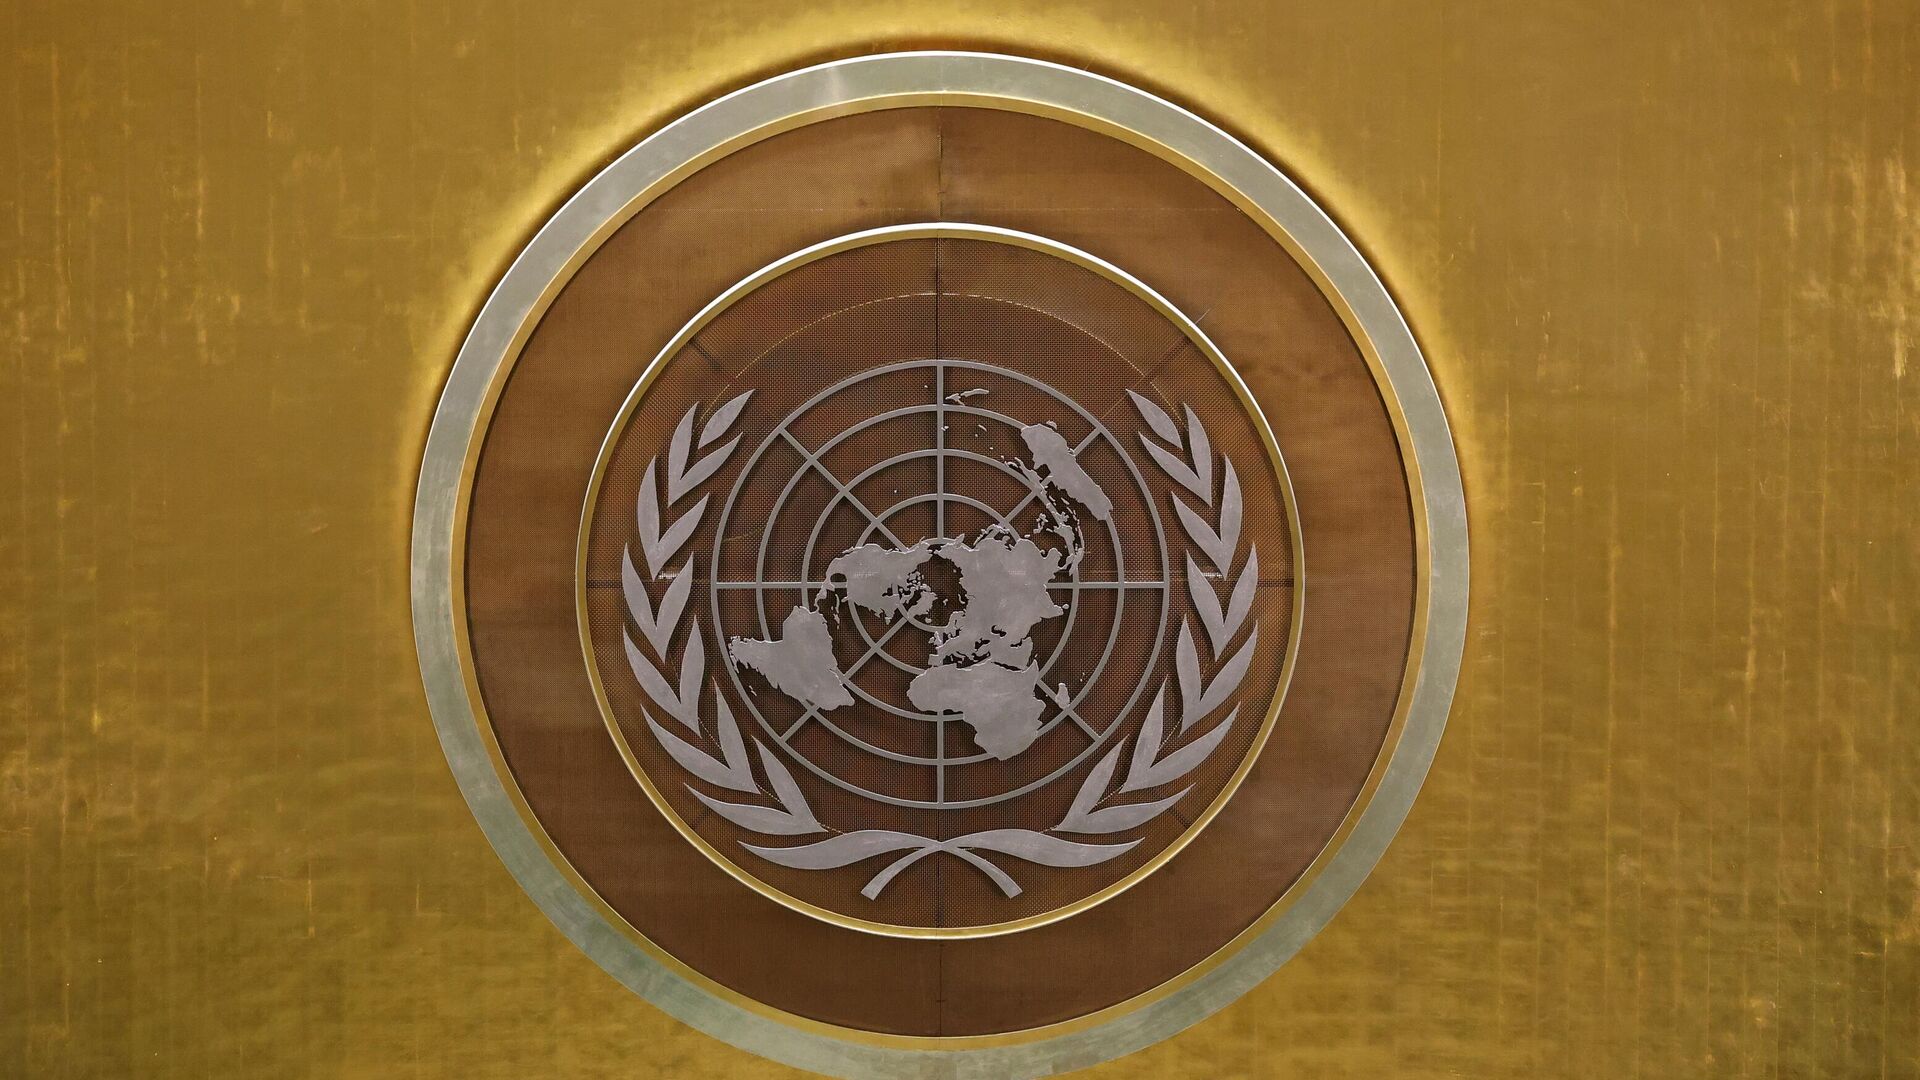 Biểu tượng của Liên hợp quốc (LHQ) tại Đại hội đồng Liên hợp quốc (LHQ) ở New York. - Sputnik Việt Nam, 1920, 02.03.2022